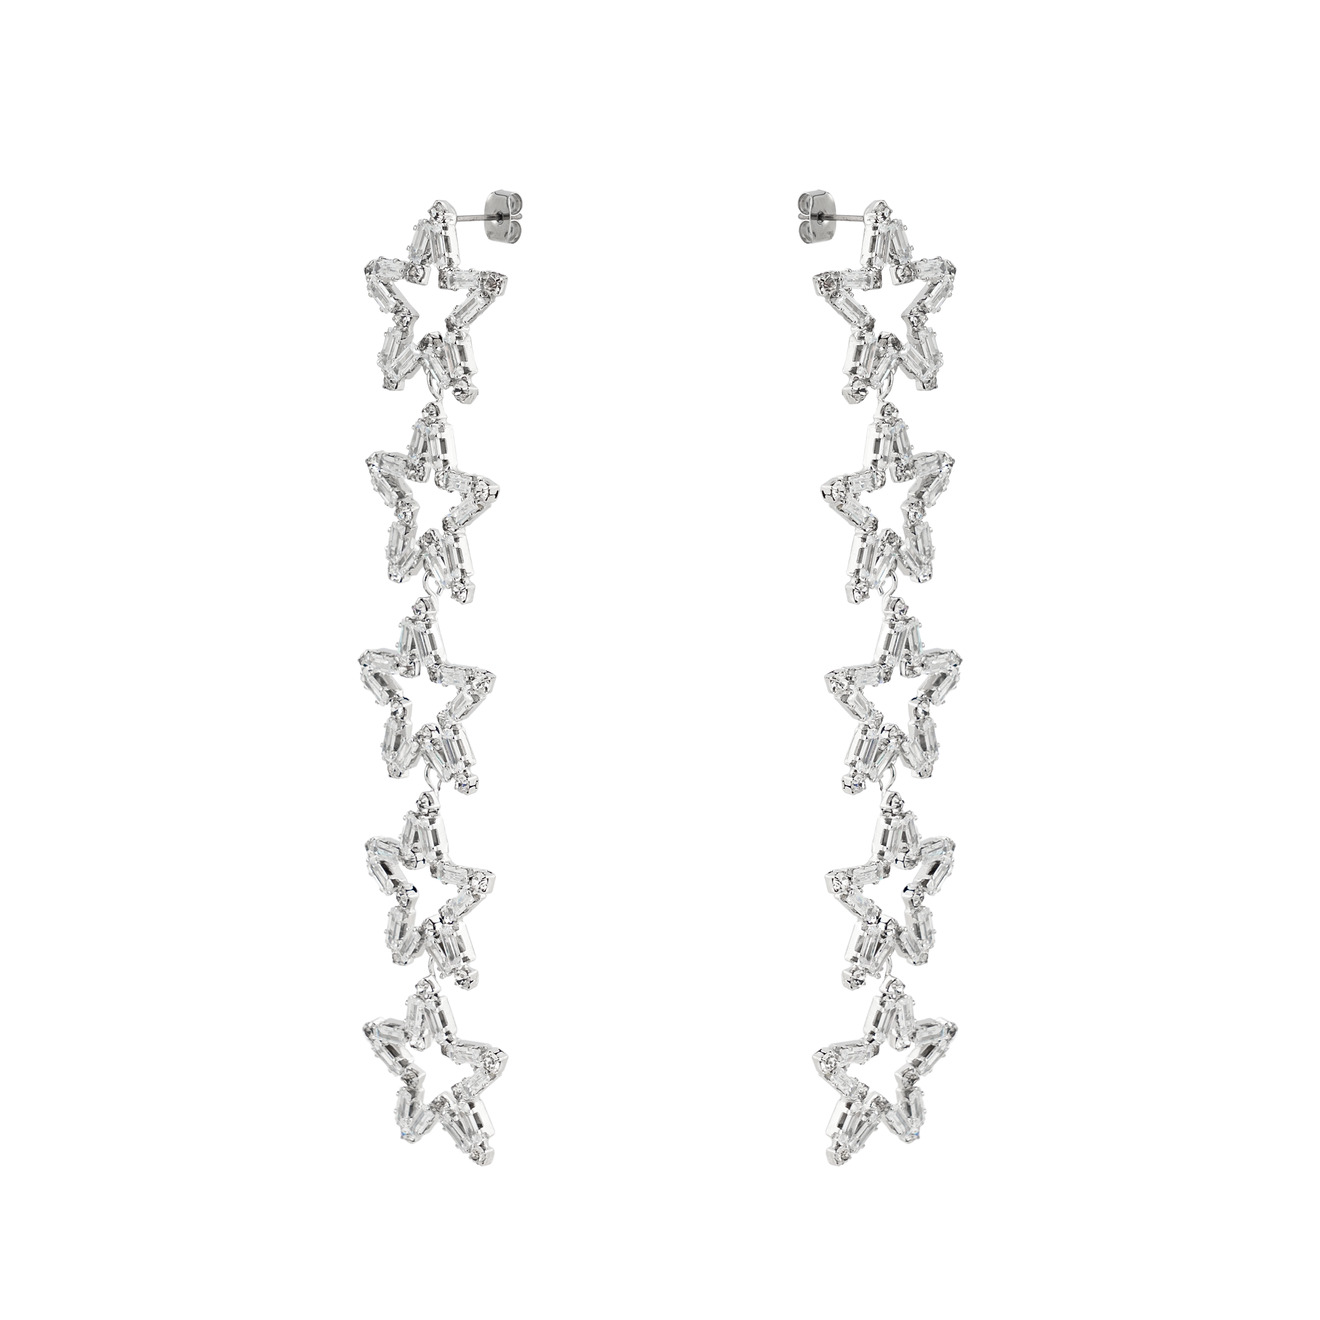 Herald Percy Серебристые серьги-дорожки из звезд с кристаллами herald percy серебристые полукруглые серьги с дорожками из белых кристаллов